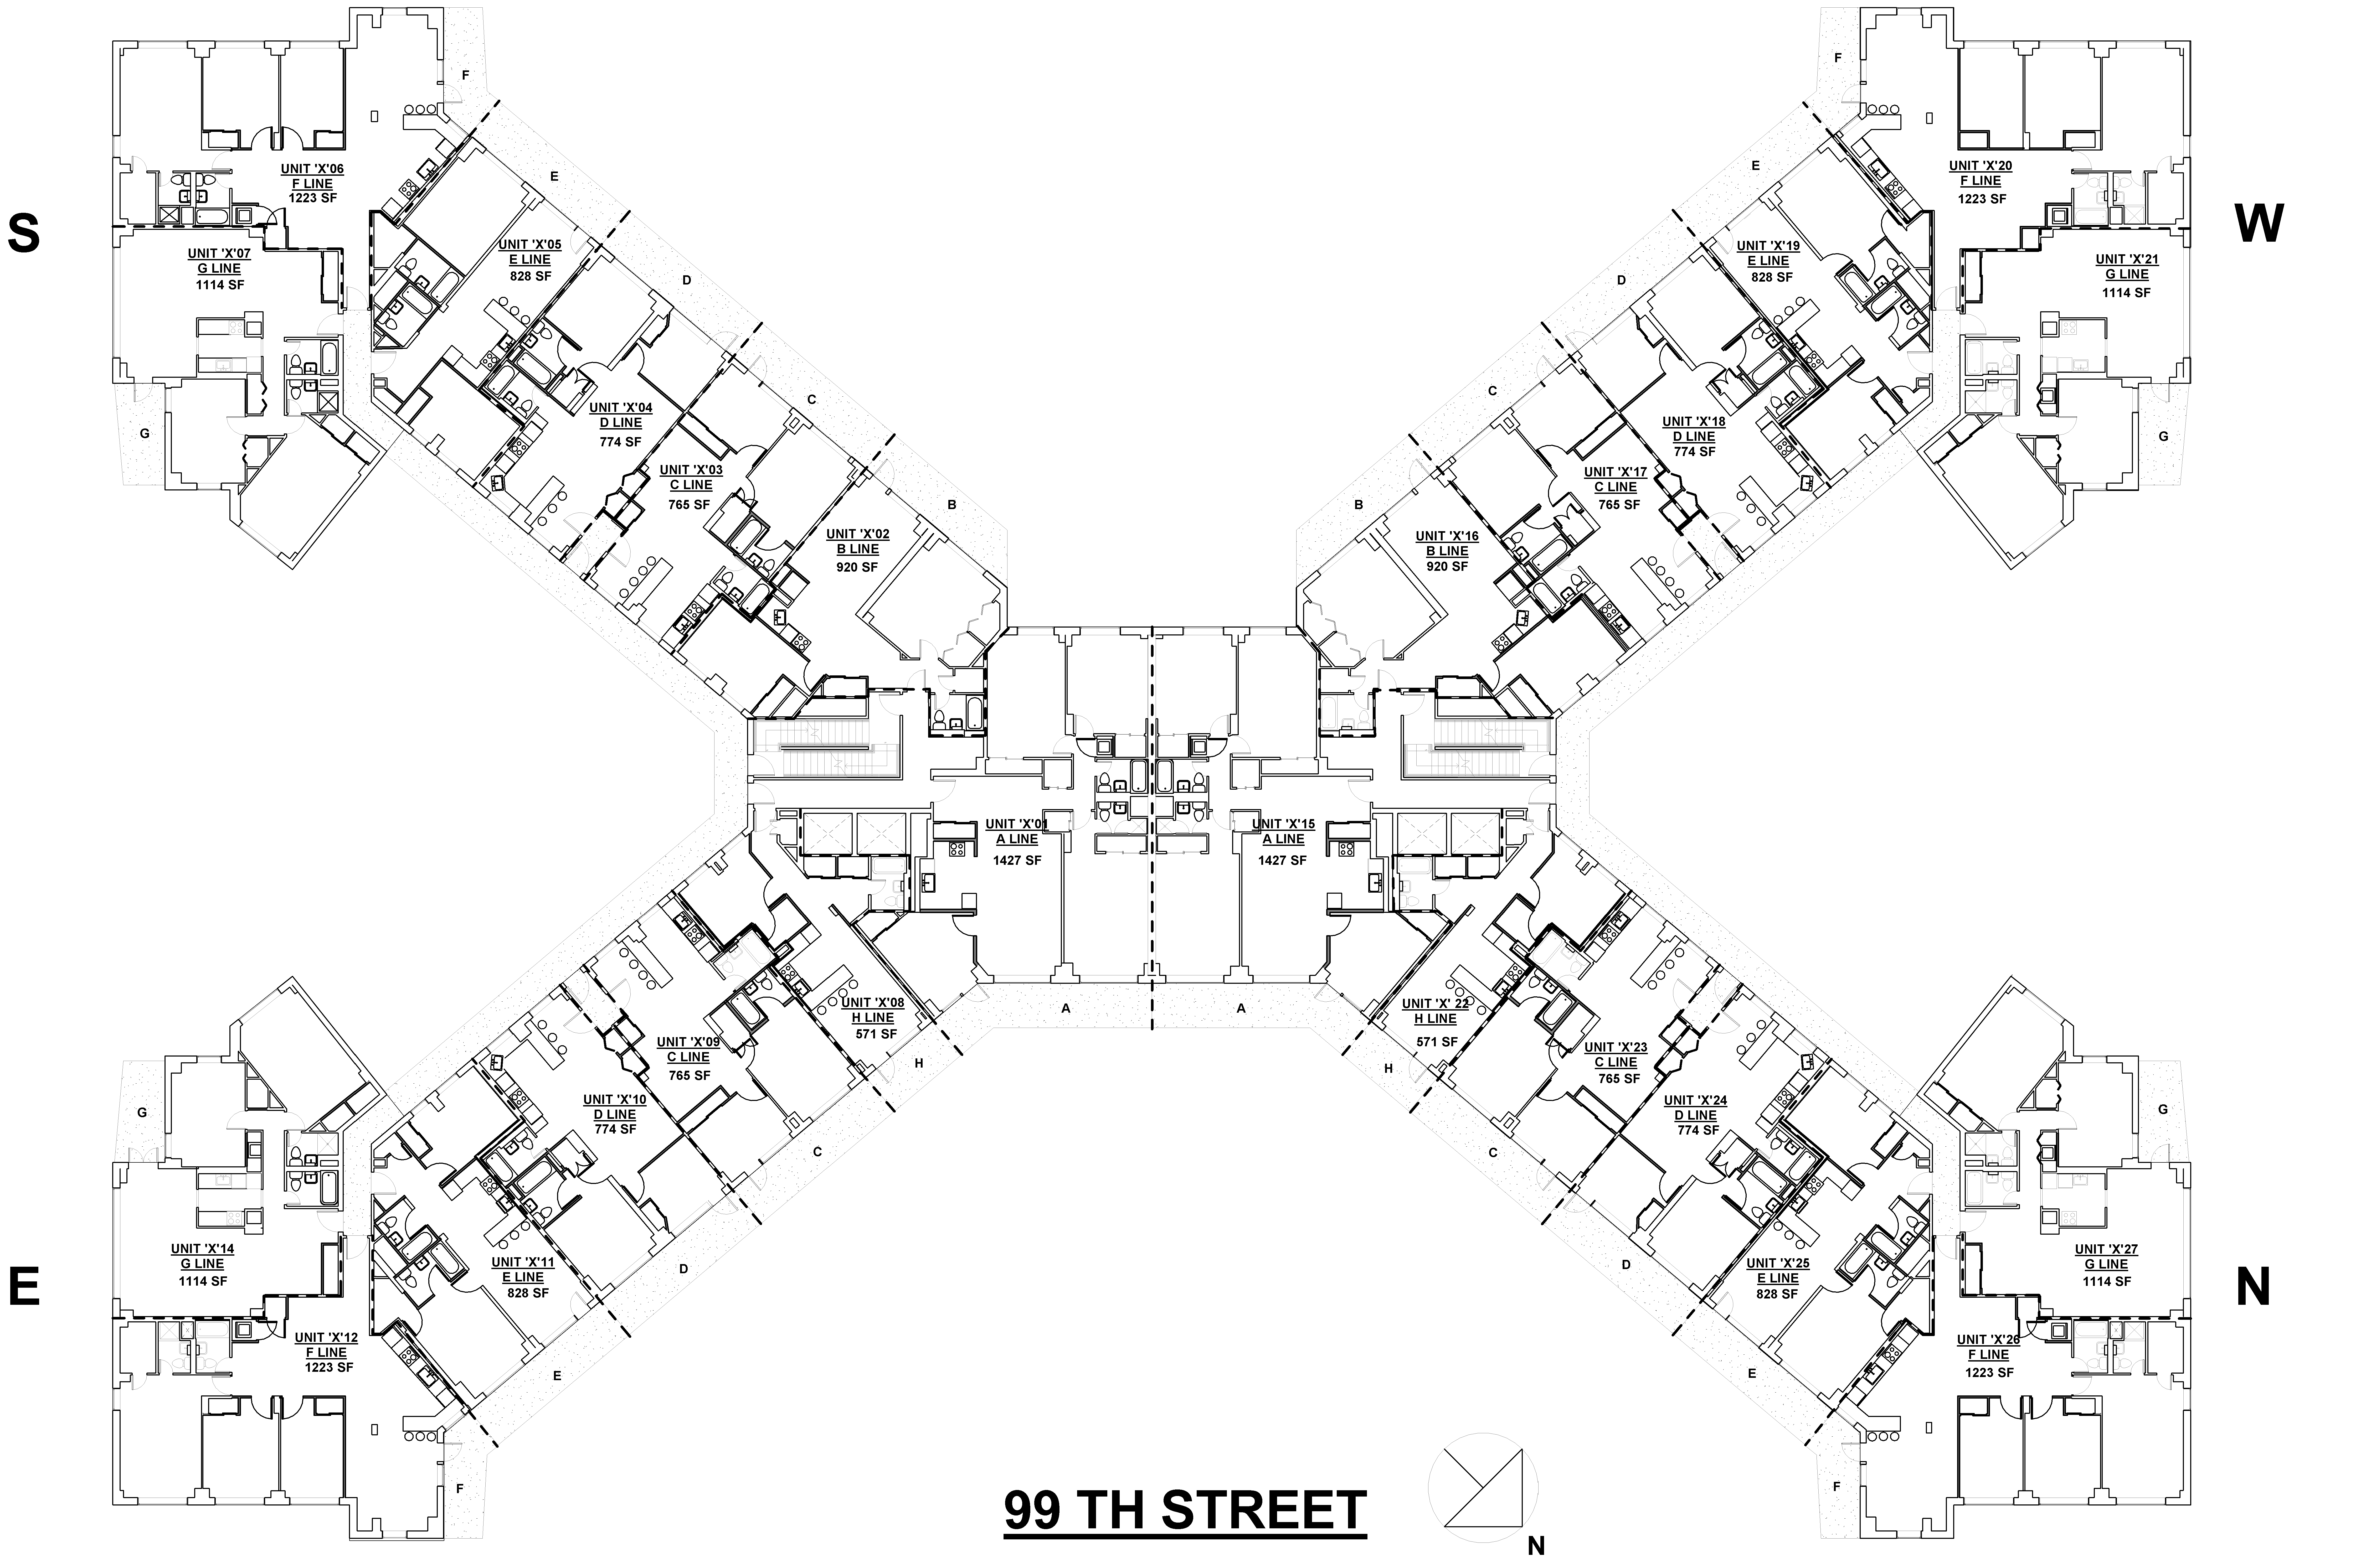 Typical Full Building Plan Floor Plan TYPICAL FLOOR PLAN KEY FLOORS 1 17